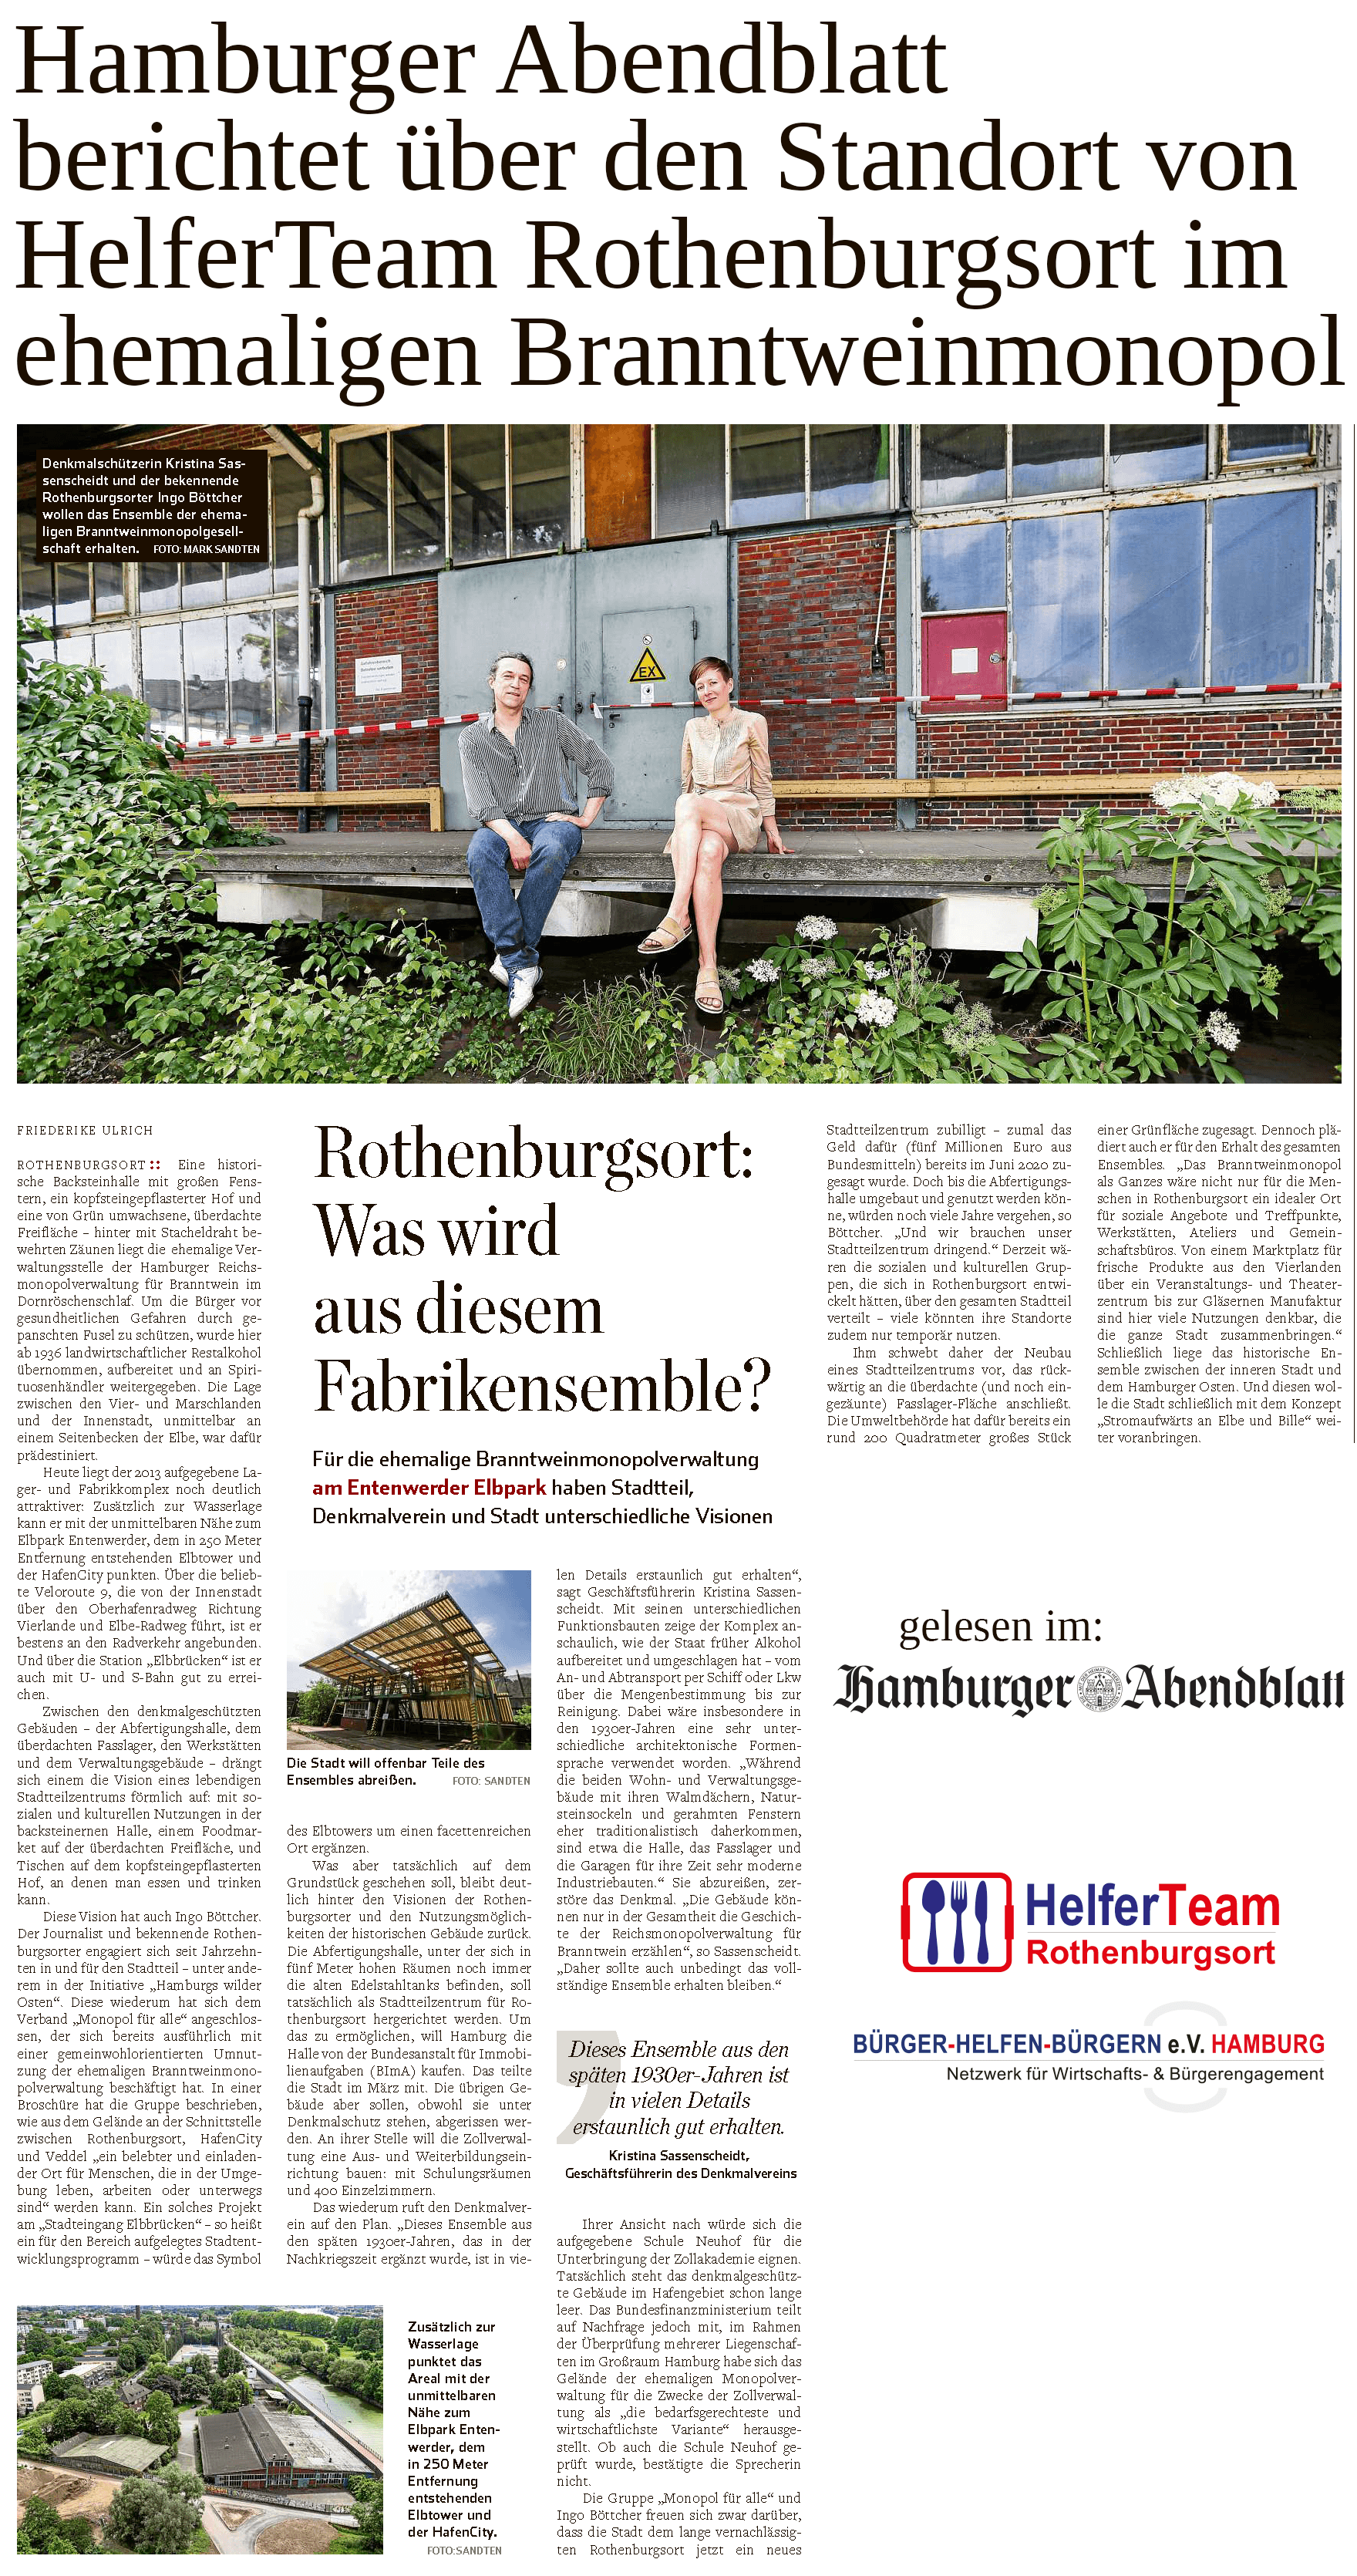 Hamburger Abendblatt berichtet über Standort von HelferTeam Rothenburgsort vom gemeinnützigen Trägerverein Bürger helfen Bürgern e.V. Hamburg